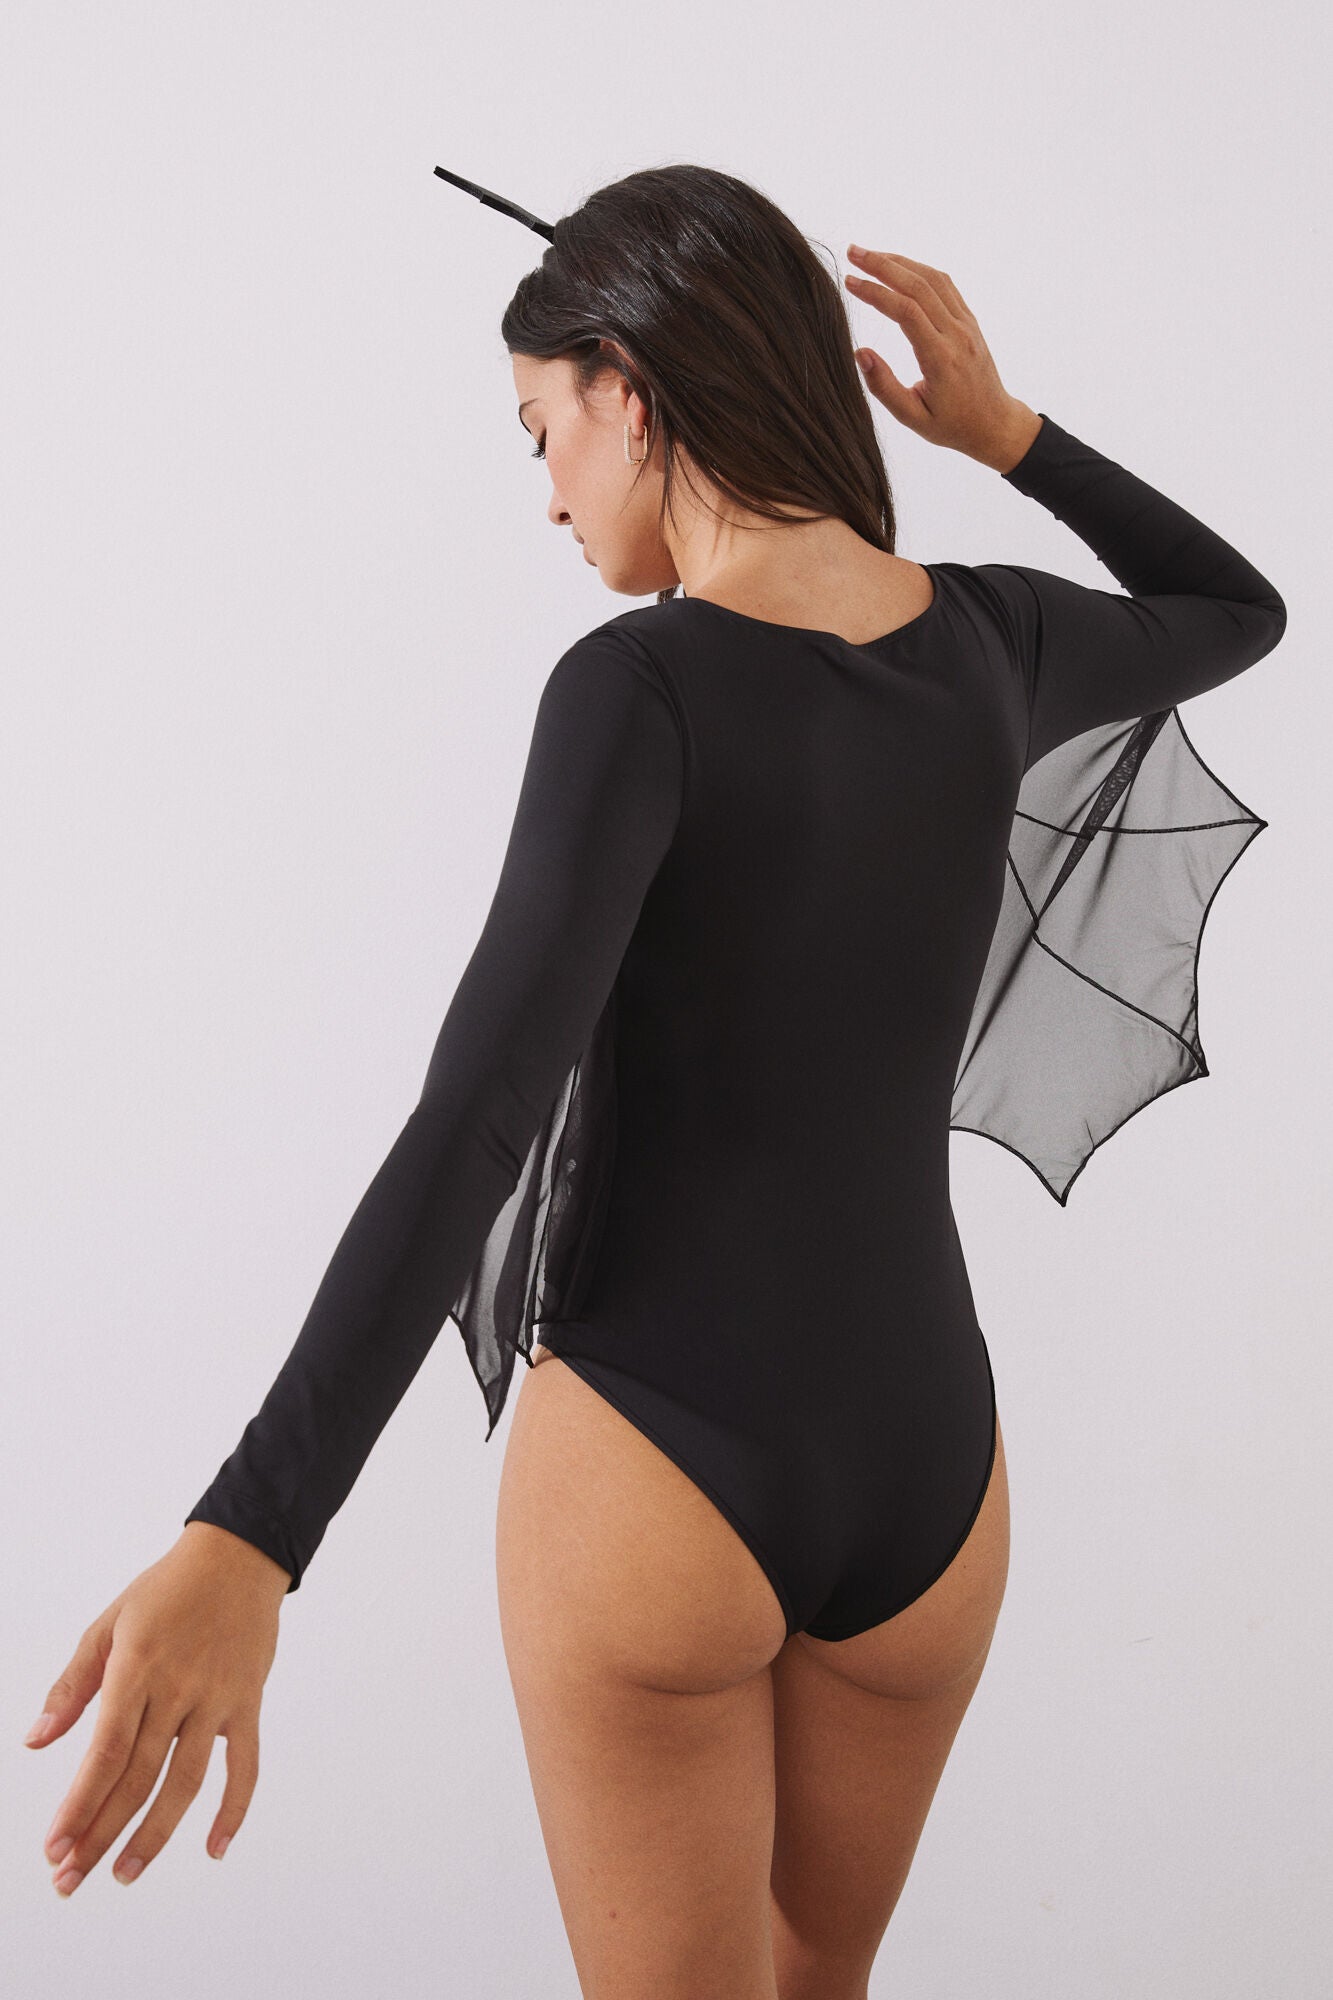 Black long-sleeved bodysuit with bat wings